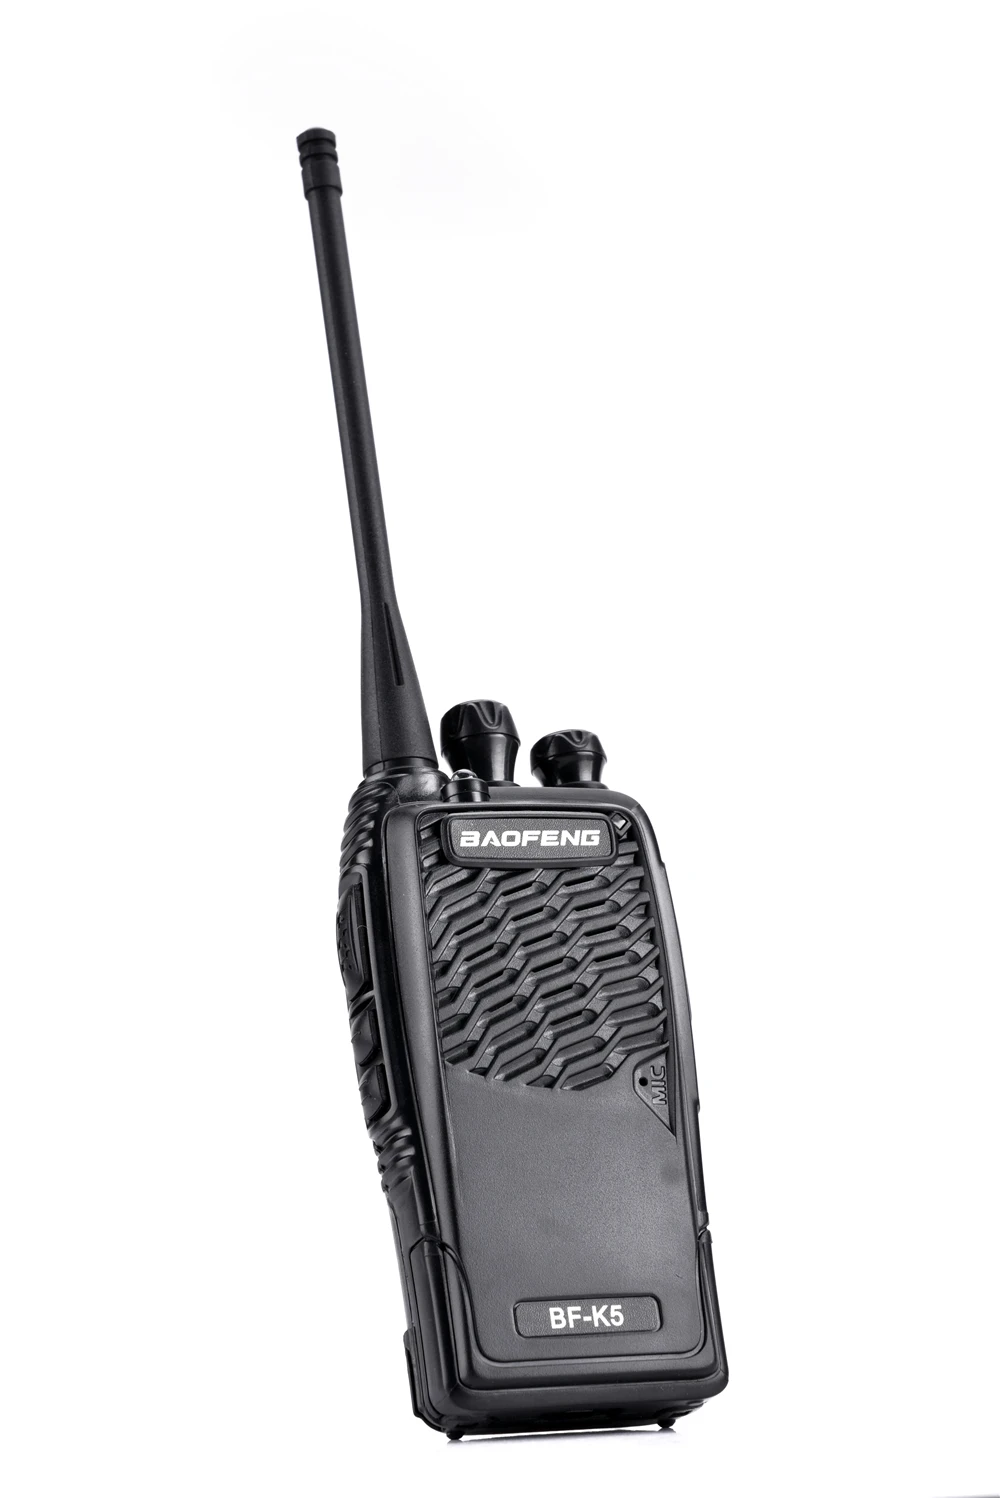 2 шт. 100% оригинал Baofeng радио Comunicador BF-K5 двухстороннее радио сканер радио Statio Baofeng радио Amador Cb радио 27 МГц